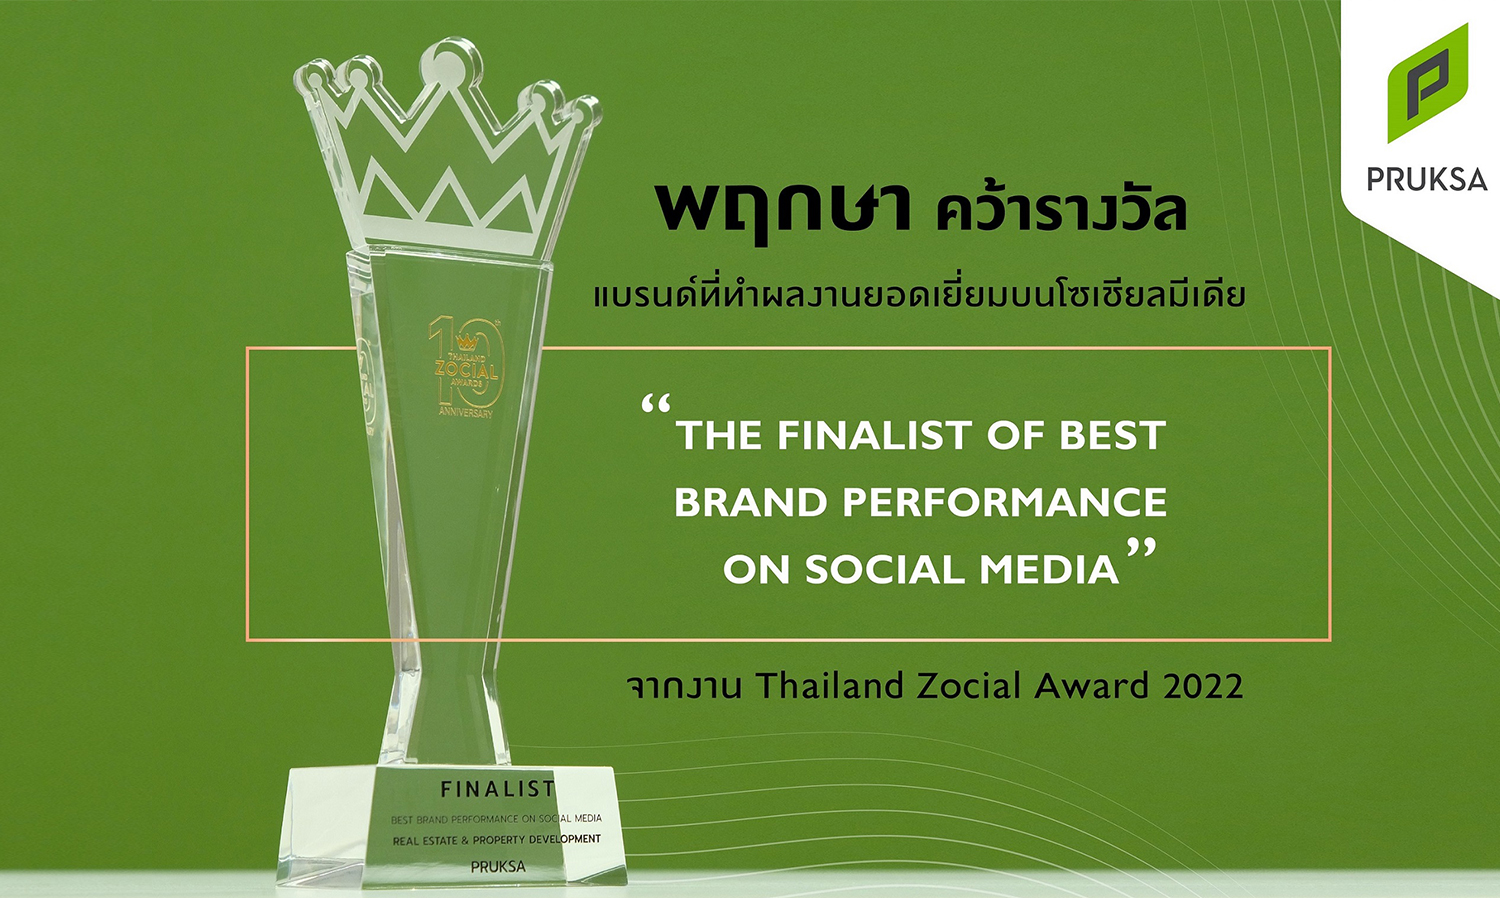 พฤกษา สร้างผลงานโดดเด่นบนโลกโซเชียลคว้ารางวัลจากงาน Thailand Zocial Award 2022 